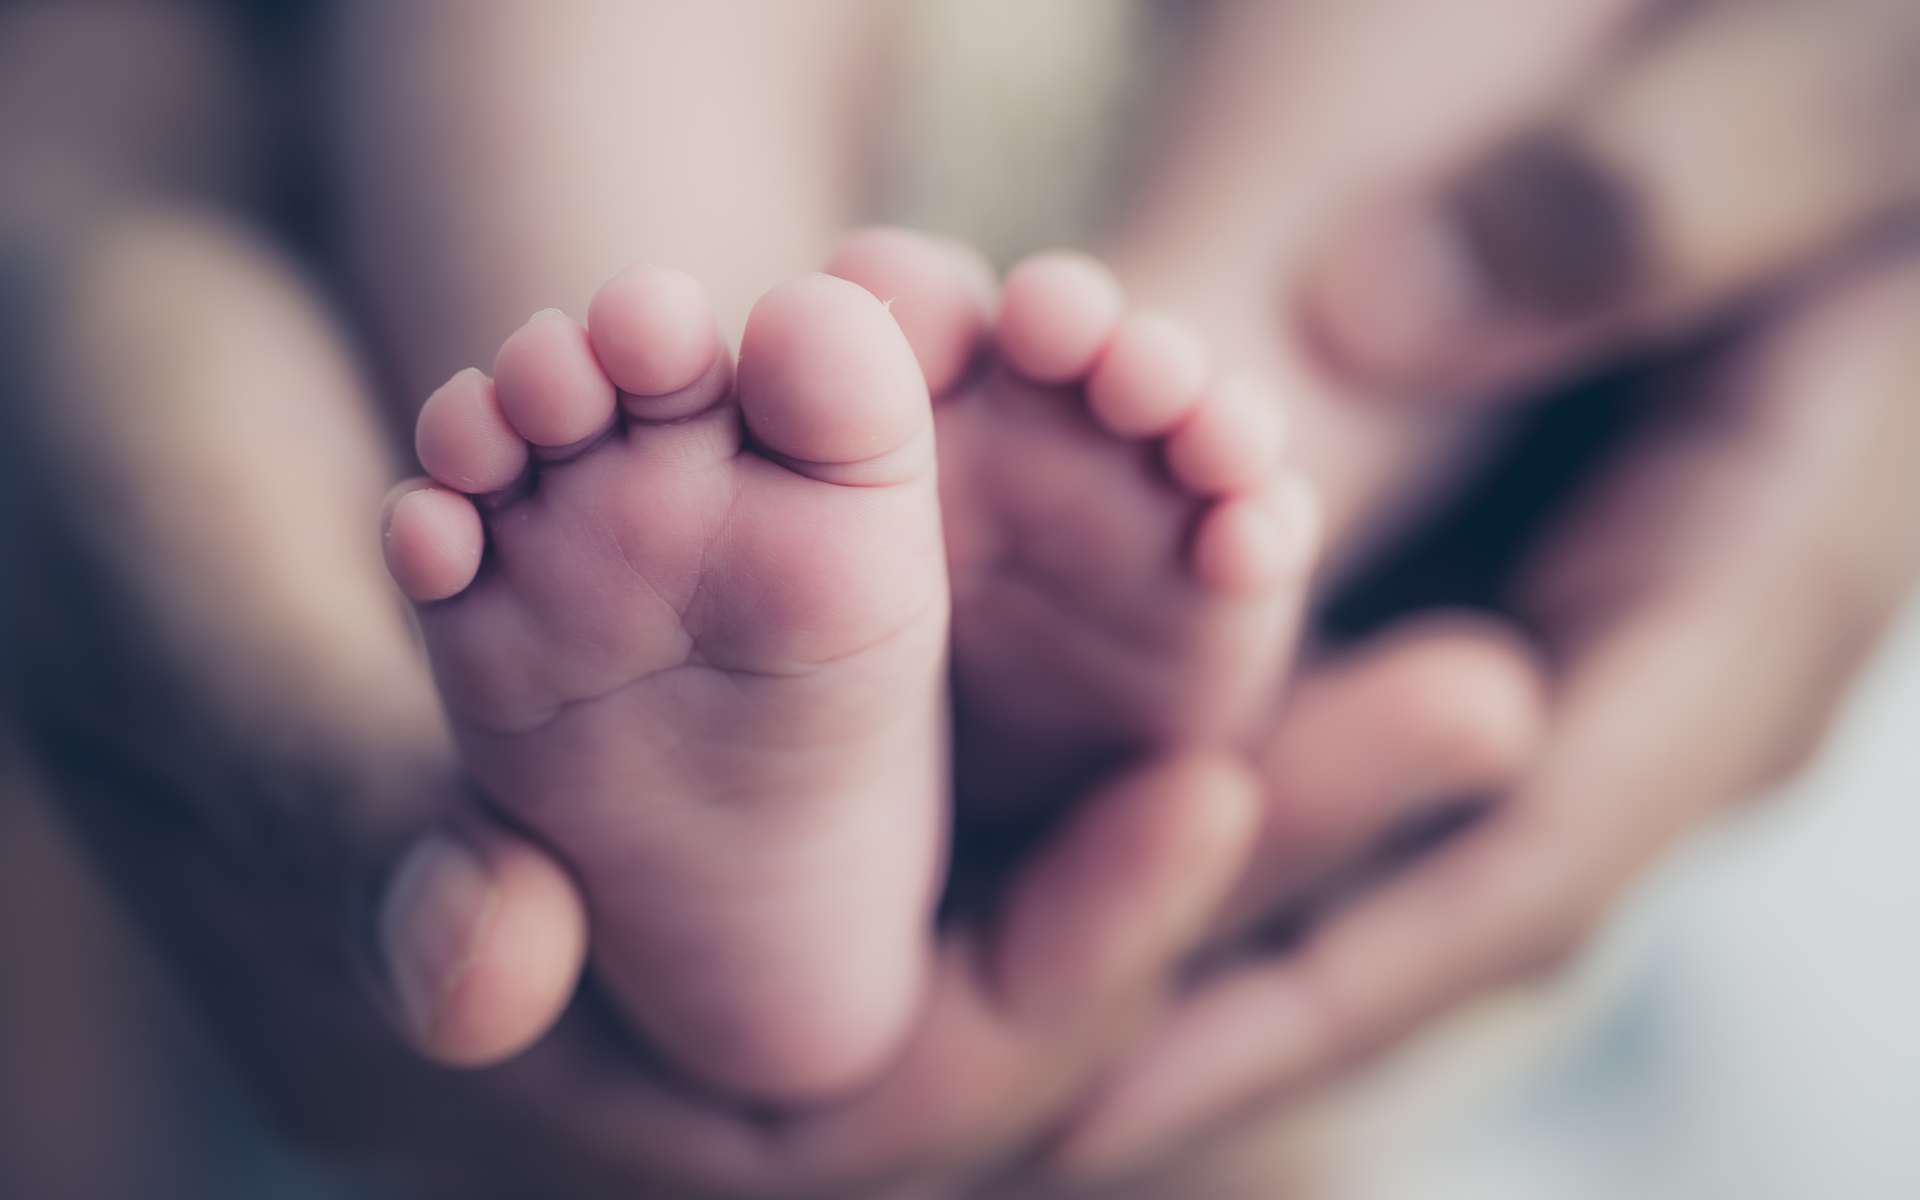 Les enfants siamois représentent une naissance sur 50.000 à 100.000. © Simon Dannhauer, Adobe Stock